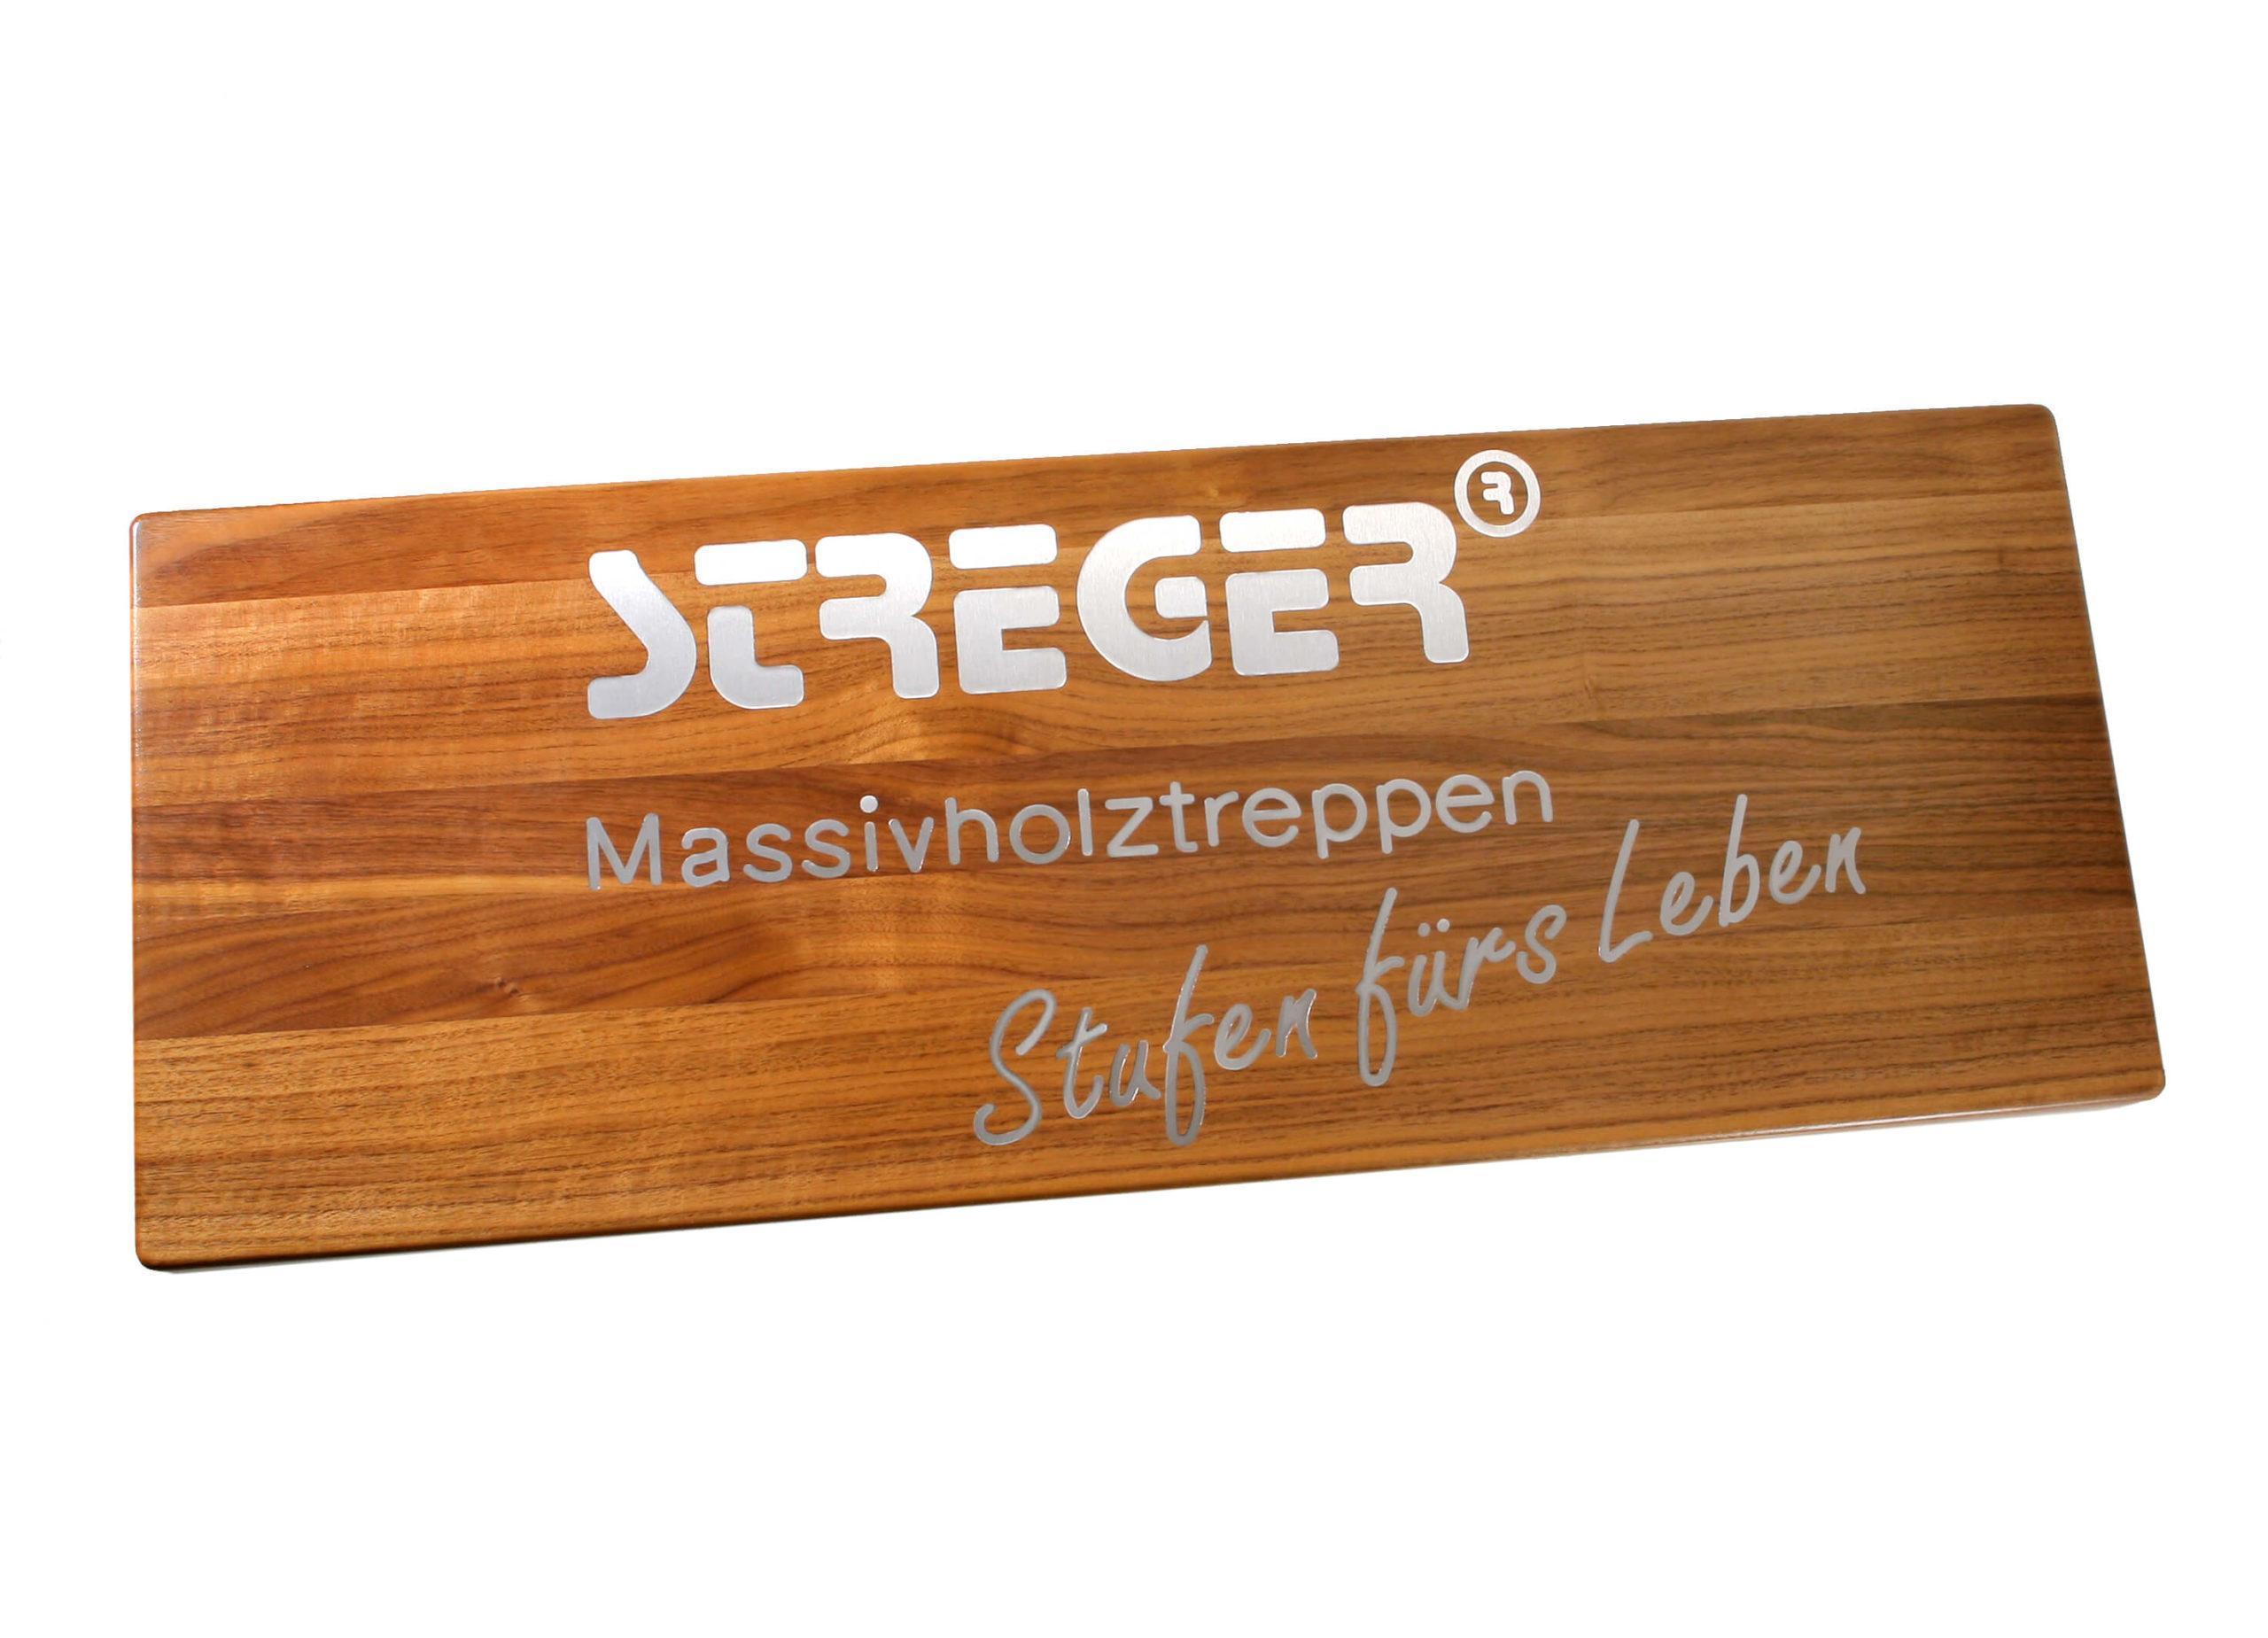 STREGER Intarsien mit STREGER-Logo